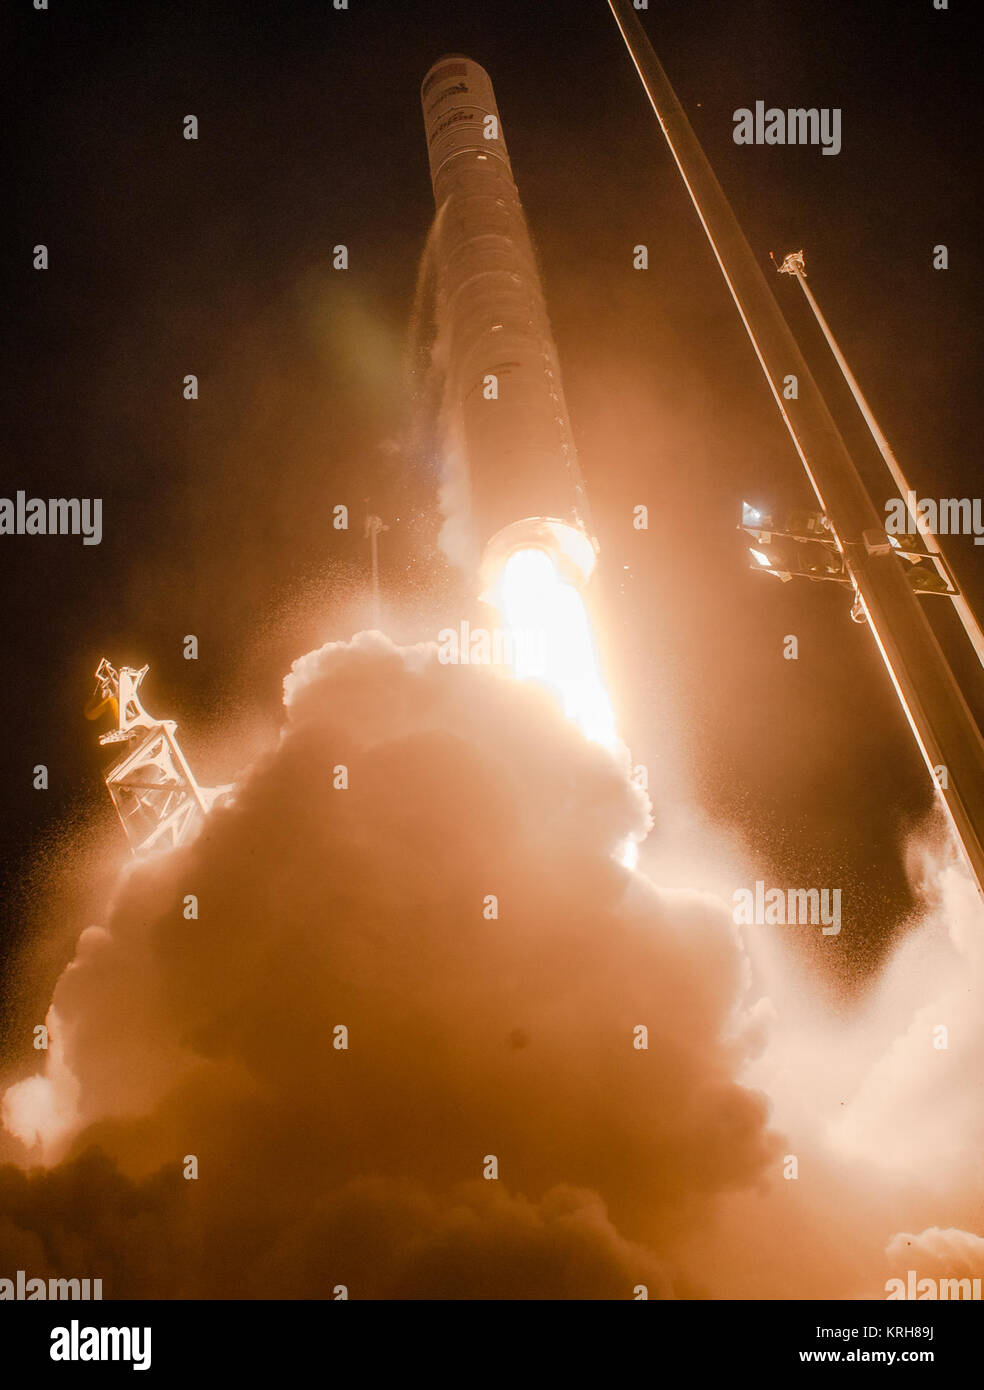 L'orbitale ATK Antares rocket, con il veicolo spaziale Cygnus onboard, lancia da Mid-Atlantic Spaceport regionale Pad 0A, Martedì, 28 ottobre 2014, alla NASA Wallops Flight Facility in Virginia. L'Antares rocket ha sofferto una grave anomalia dopo il lancio, risultante nella perdita di entrambi i veicoli. Il Cygnus navicella spaziale è stato riempito con forniture slated per la Stazione spaziale internazionale, compresa la scienza esperimenti, esperimento hardware, pezzi di ricambio, e disposizioni dell'equipaggio. Photo credit: (NASA/Joel Kowsky) ATK orbitale Antares lancio (201410280014HQ) Foto Stock